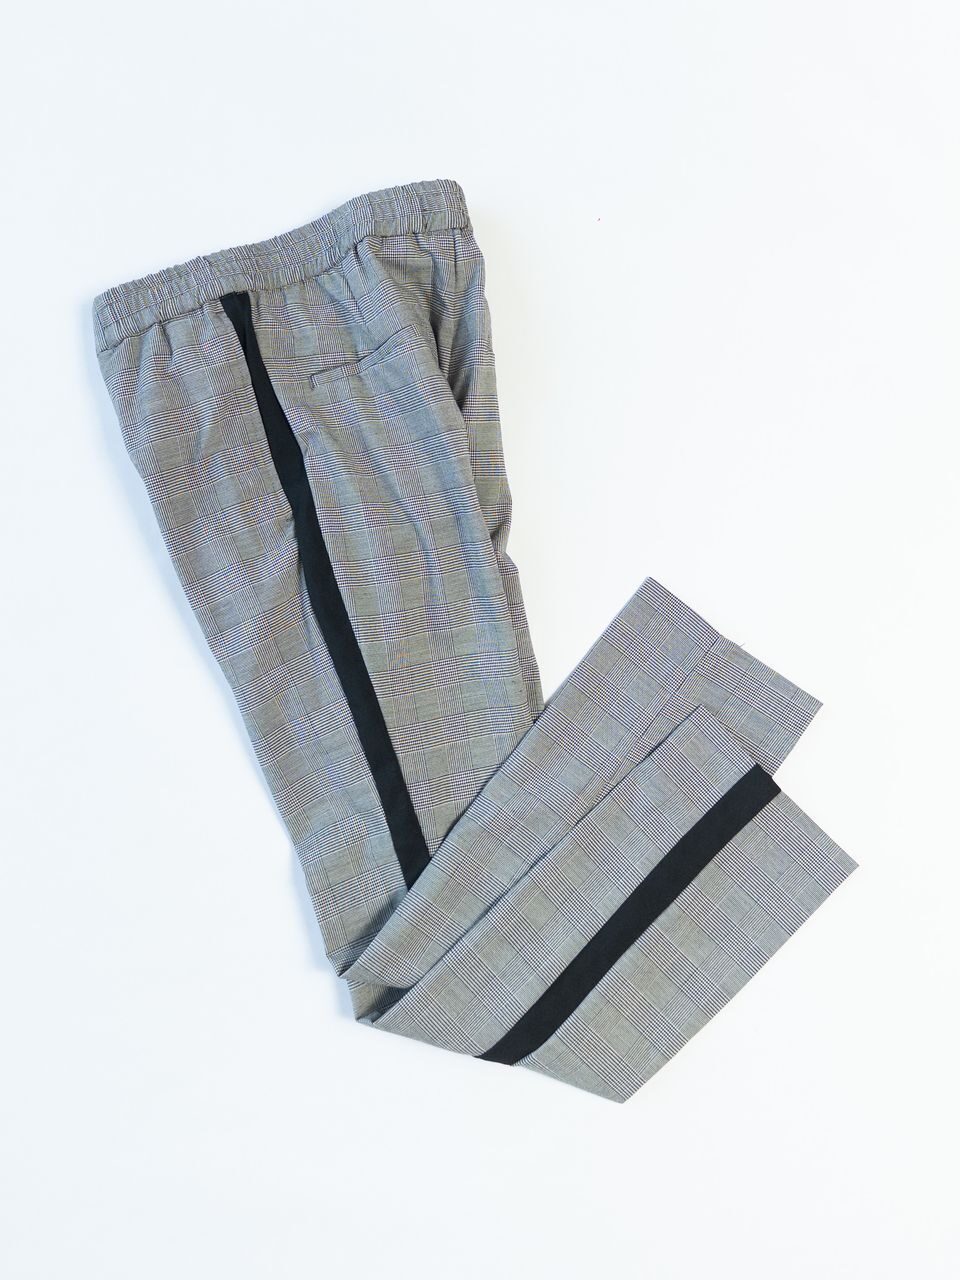 Костюмные брюки в полоску цвет черный/сетка размер EUR 46S 165/80А (rus 46 S) H&M